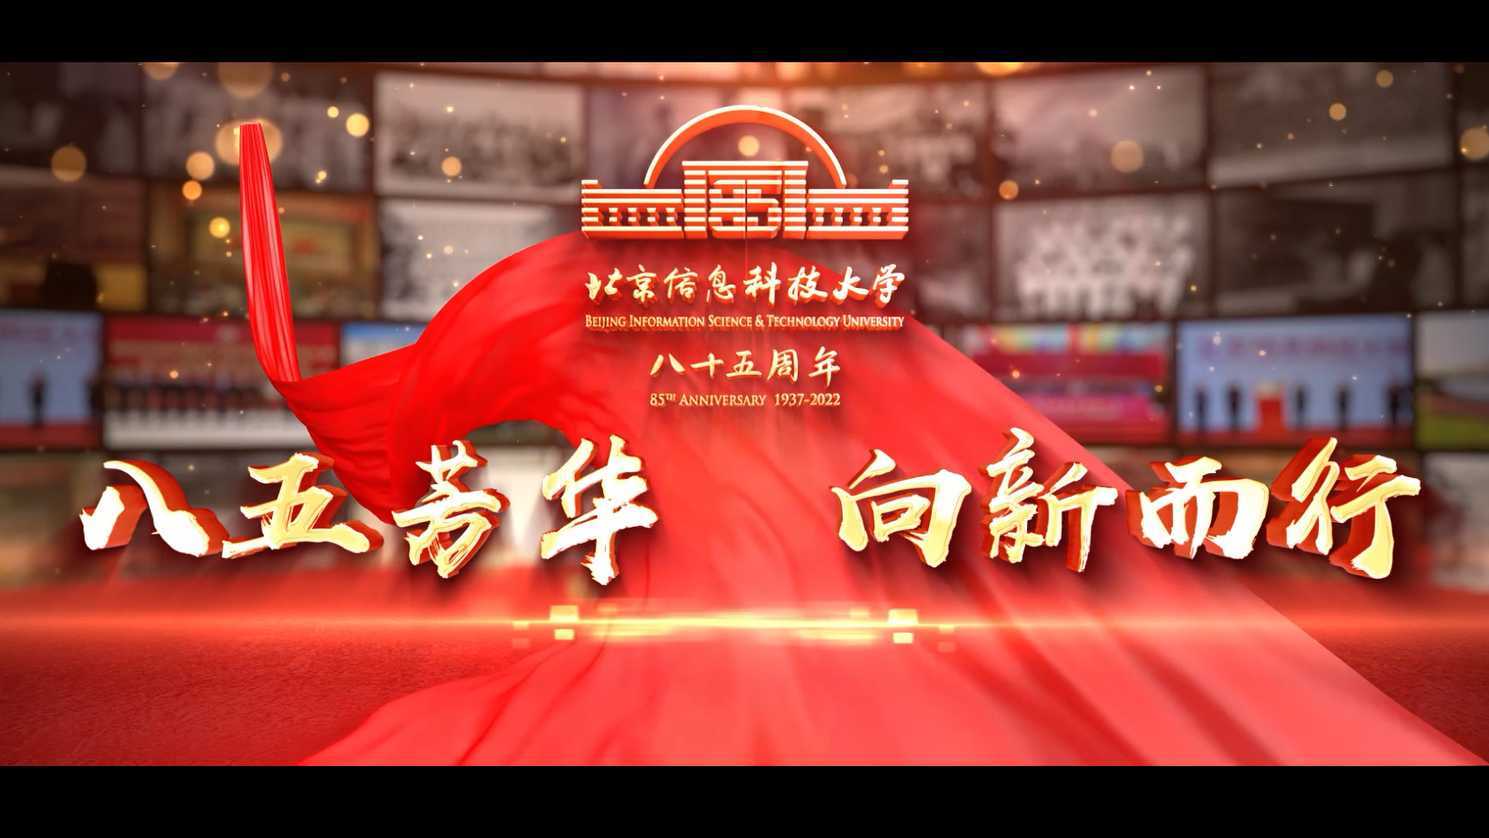 北京信息科技大学85周年校庆宣传片《八五芳华 向新而行》